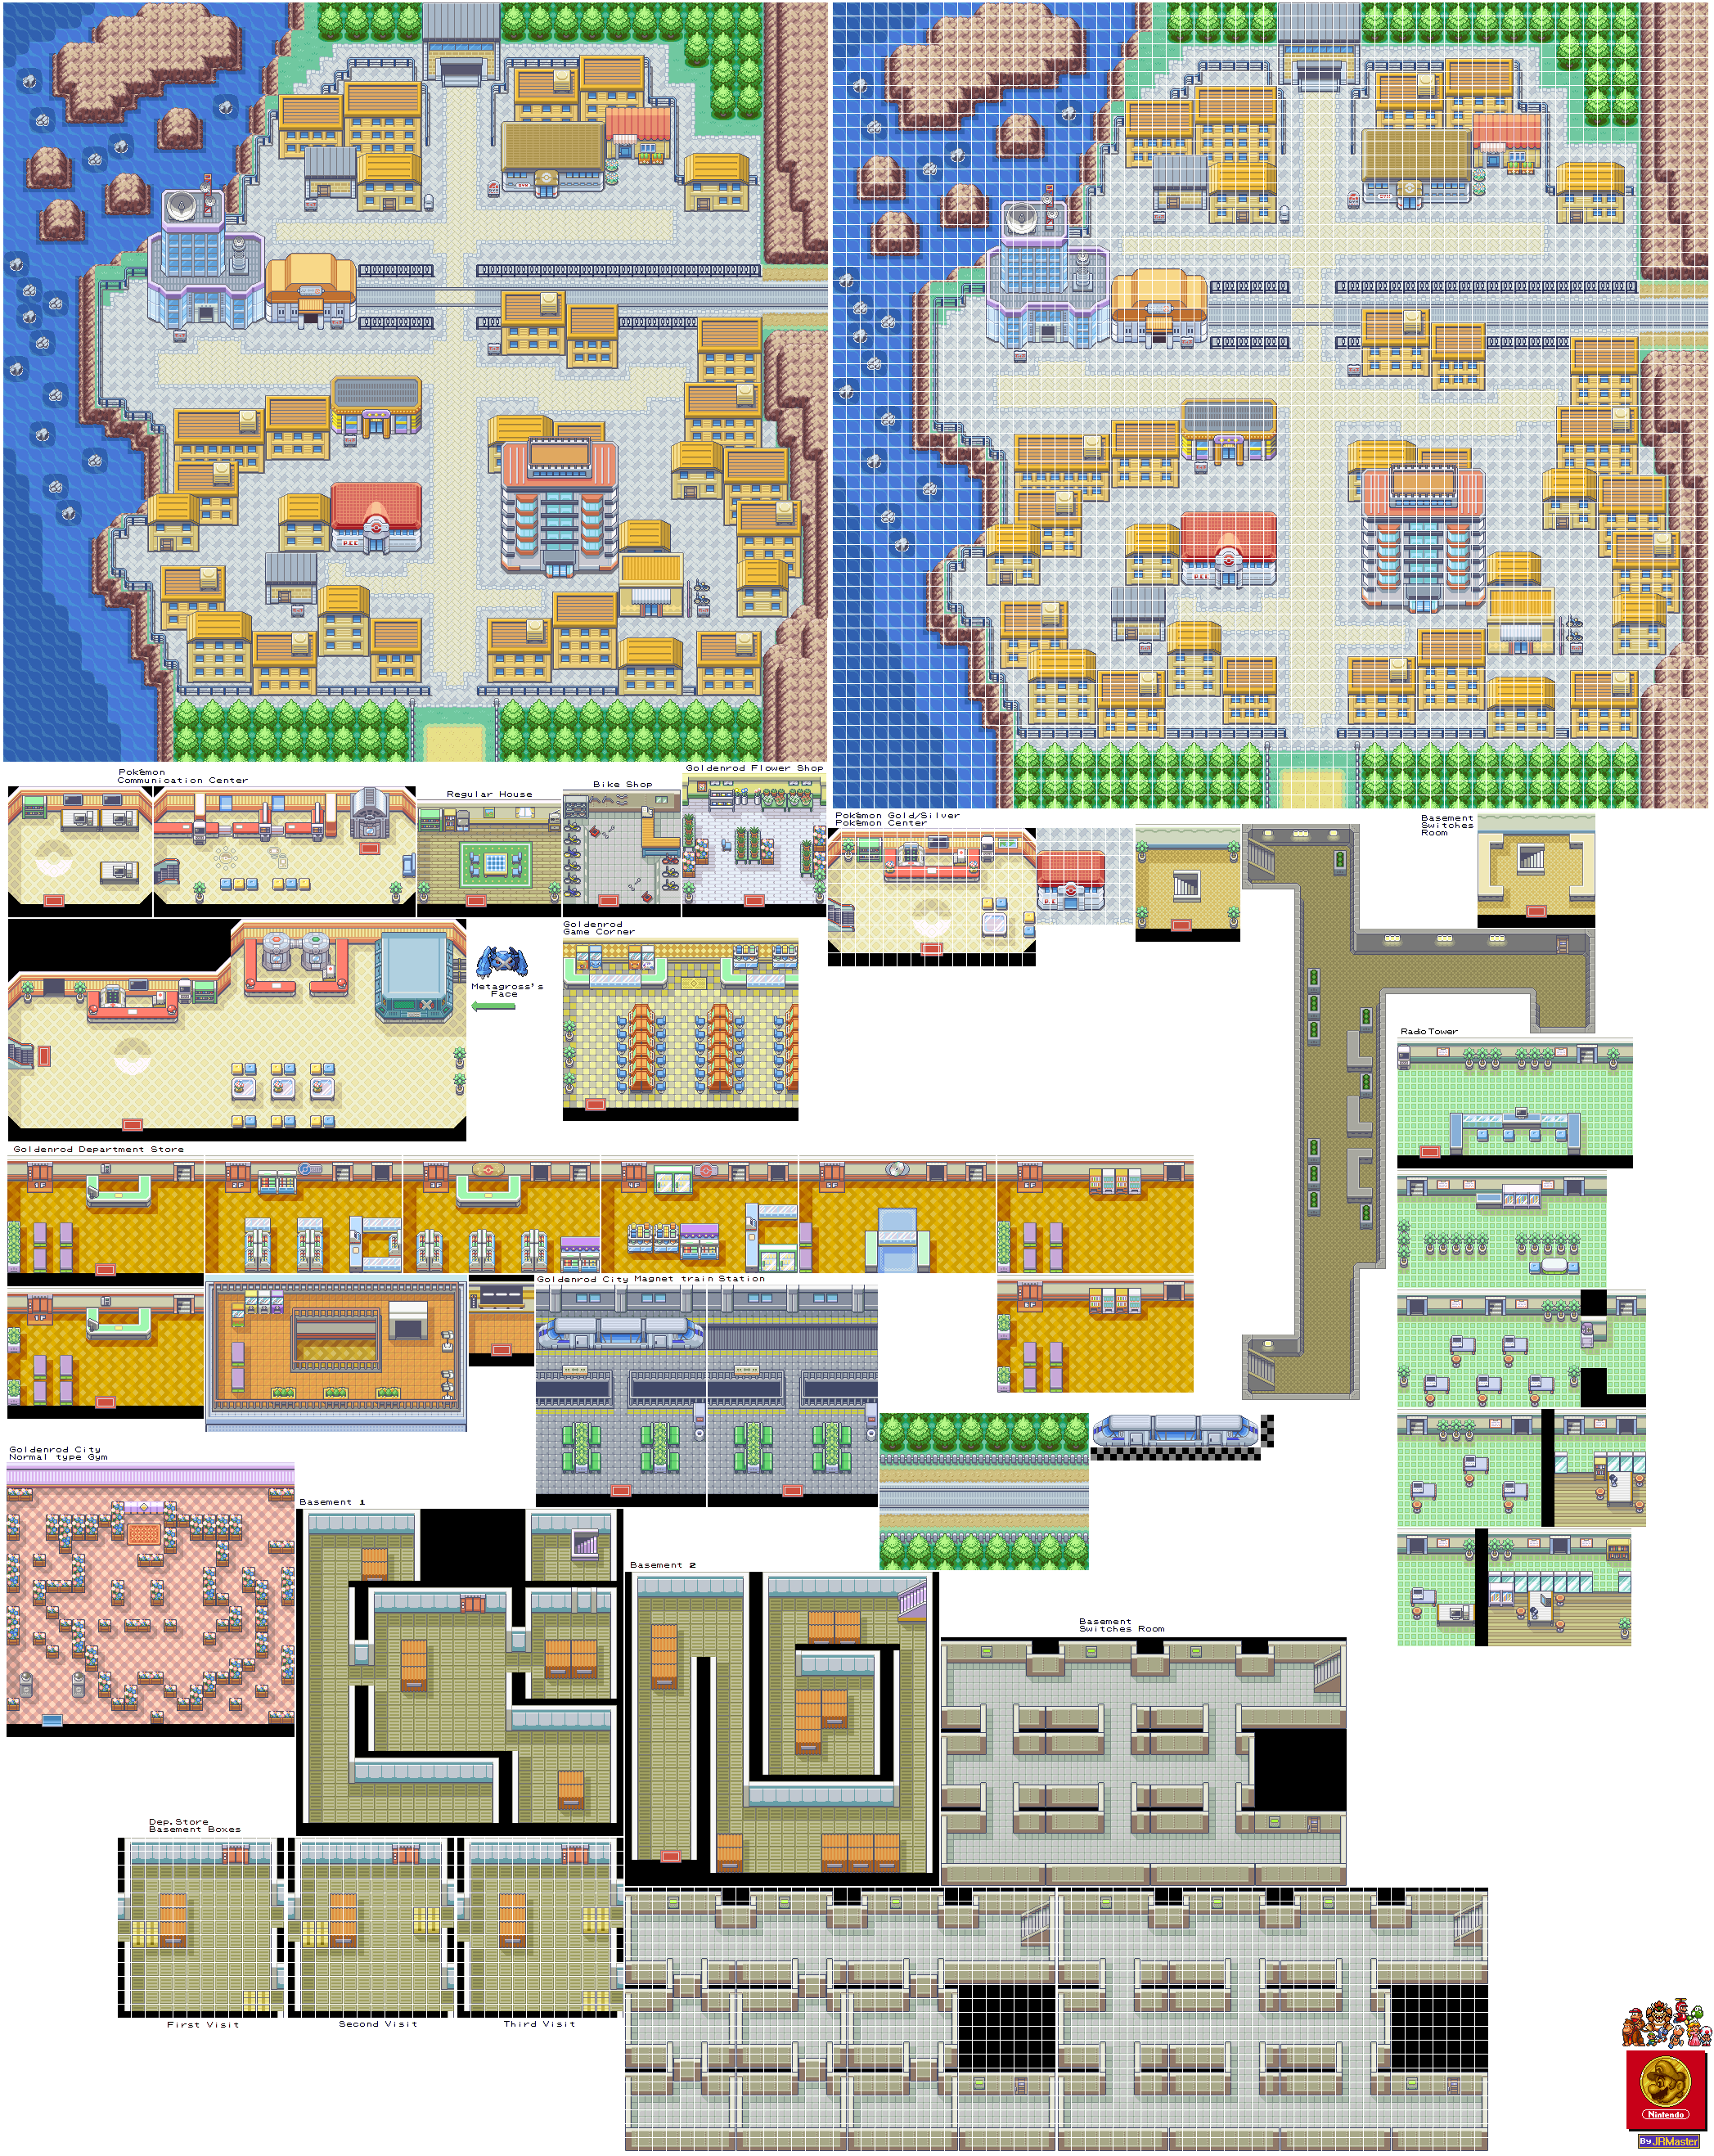 Pokémon Generation 2 Customs - Goldenrod City (GBA-Style)